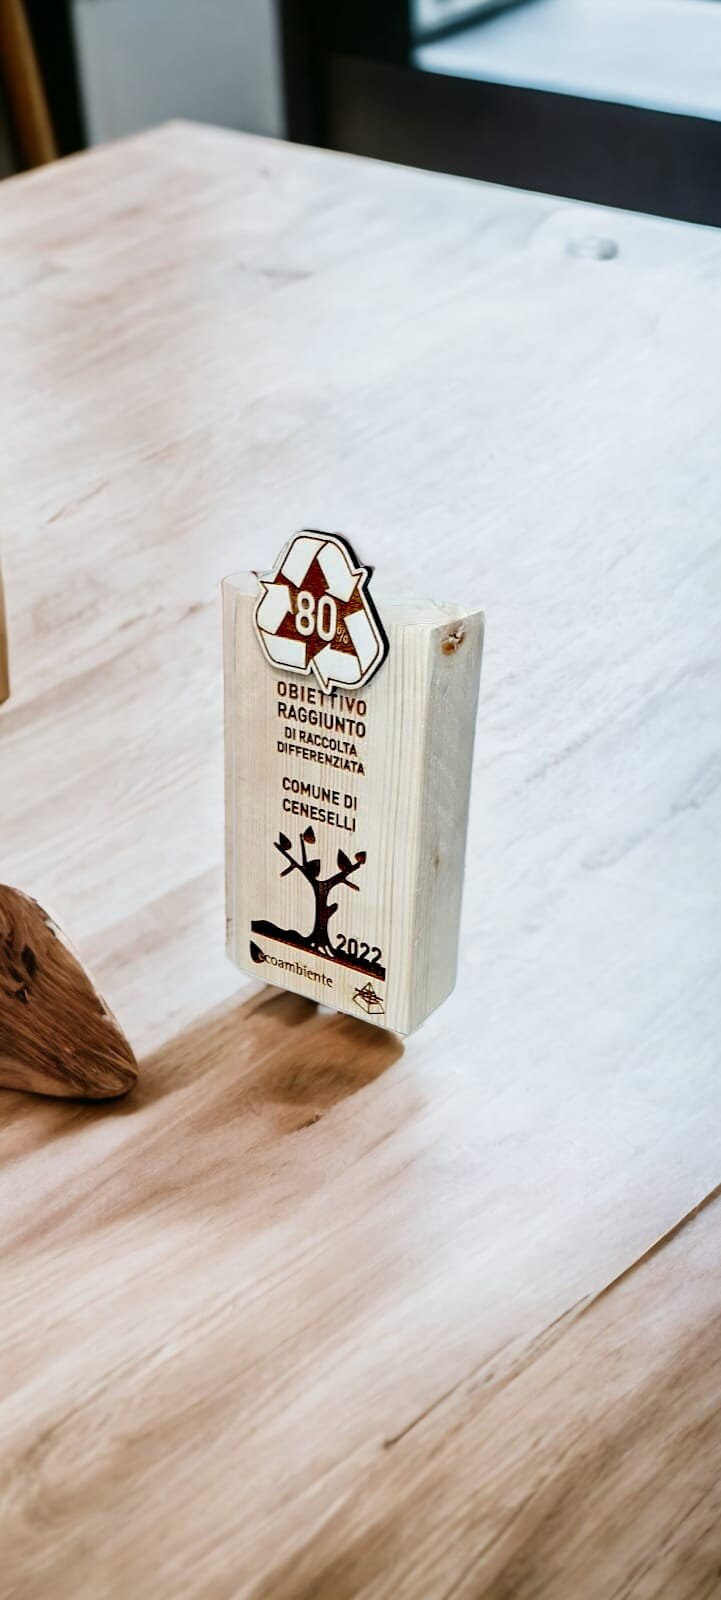 1-100pz trofei personalizzati in legno con incisione laser per maratona basket calcio evento competizione